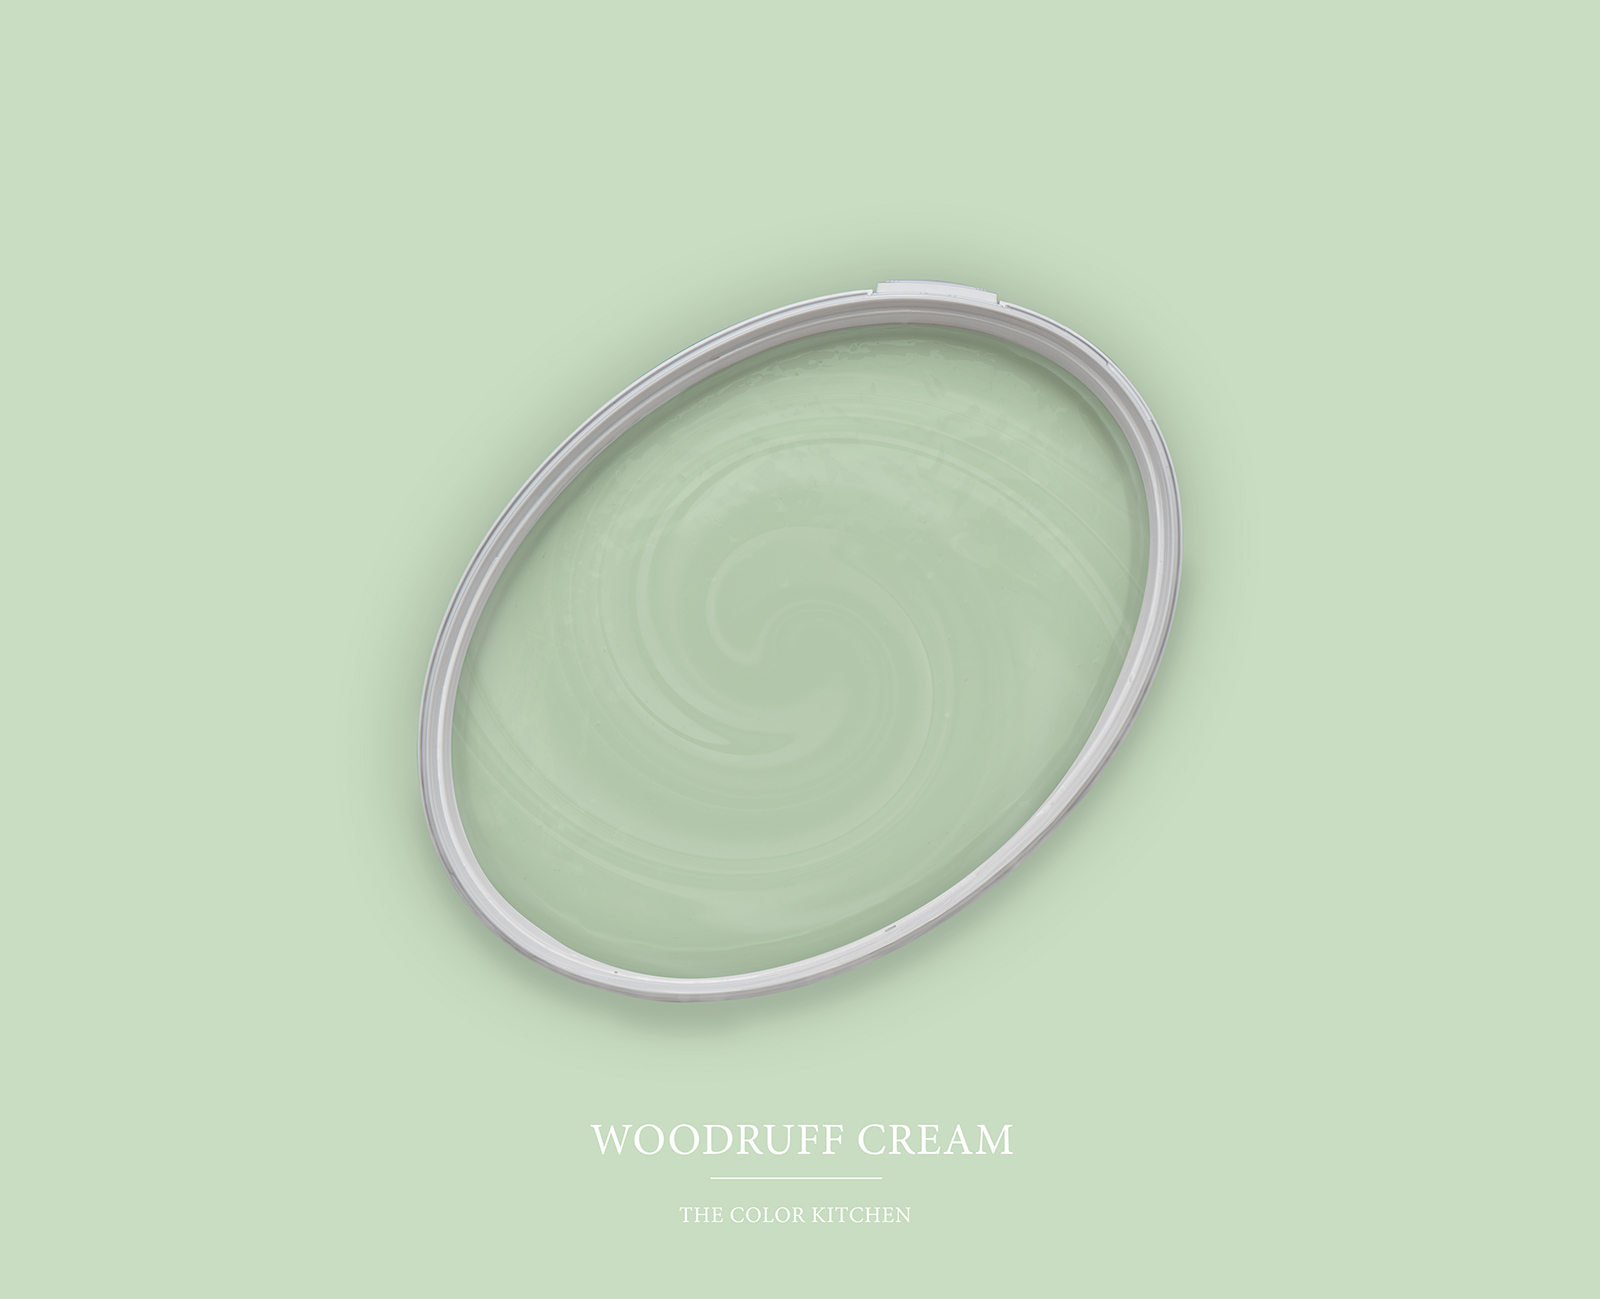         Wandfarbe TCK4007 »Woodruff Cream« in heiterem Pastellgrün – 2,5 Liter
    